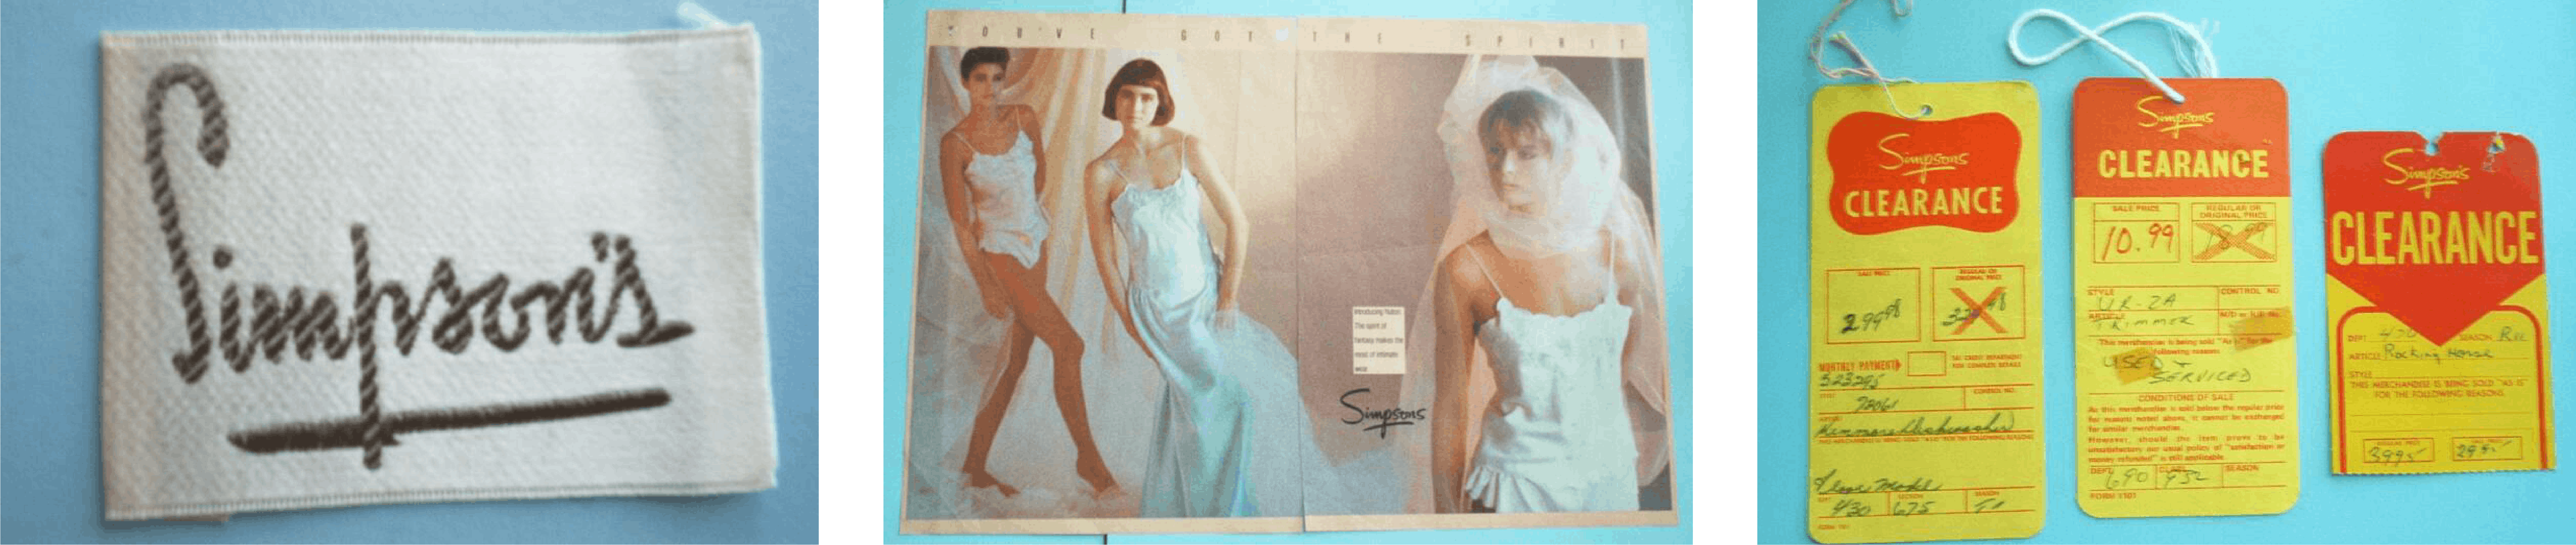  Imágenes de archivo de una tienda de Simpson&#039;s, un anuncio de lencería y etiquetas de liquidación